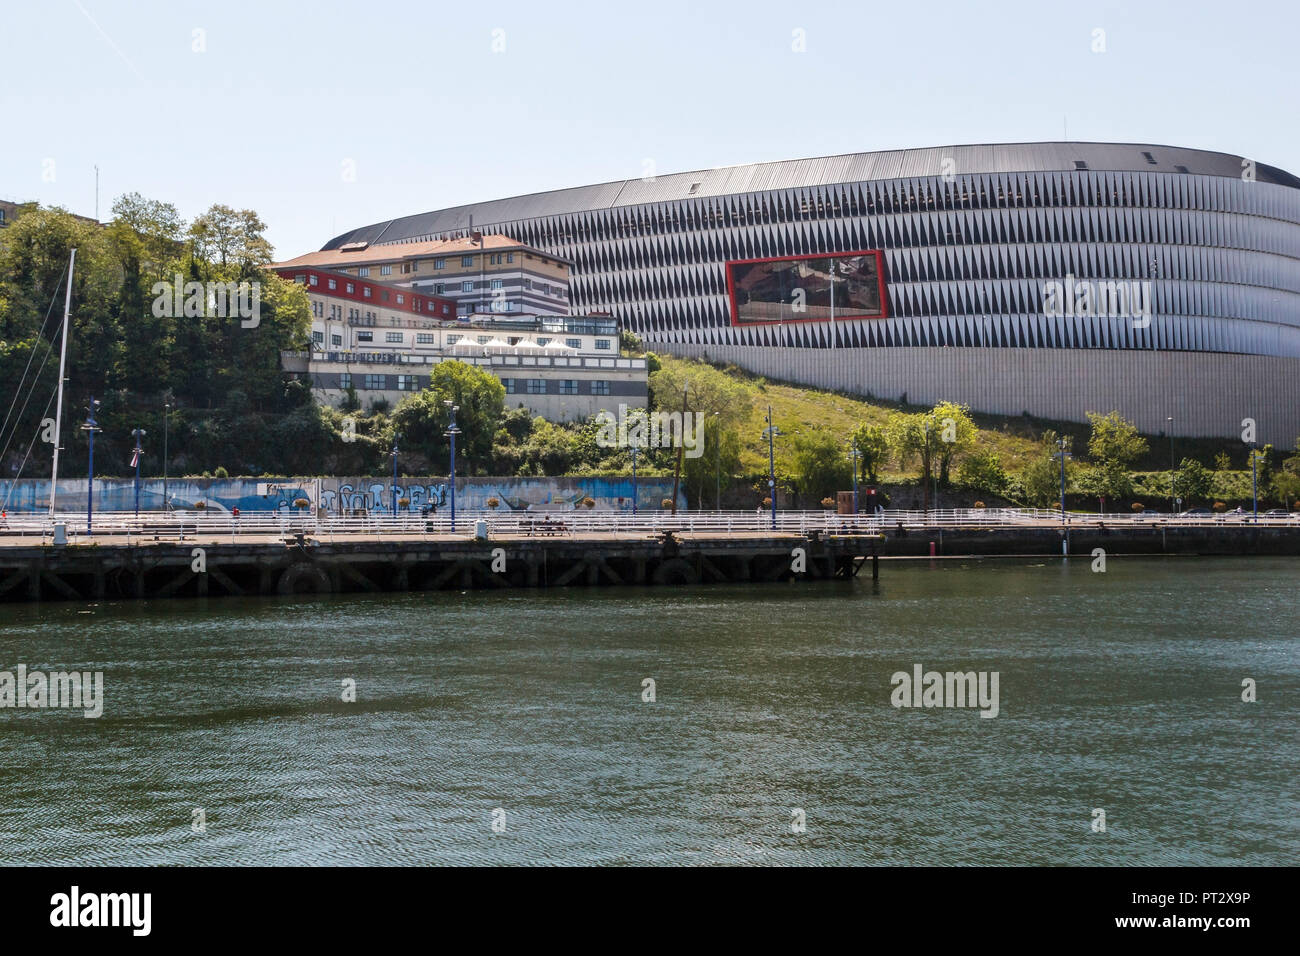 Estadio de San Mamés, the football stadium in Bilbao, Basque Country, Spain, Europe Stock Photo